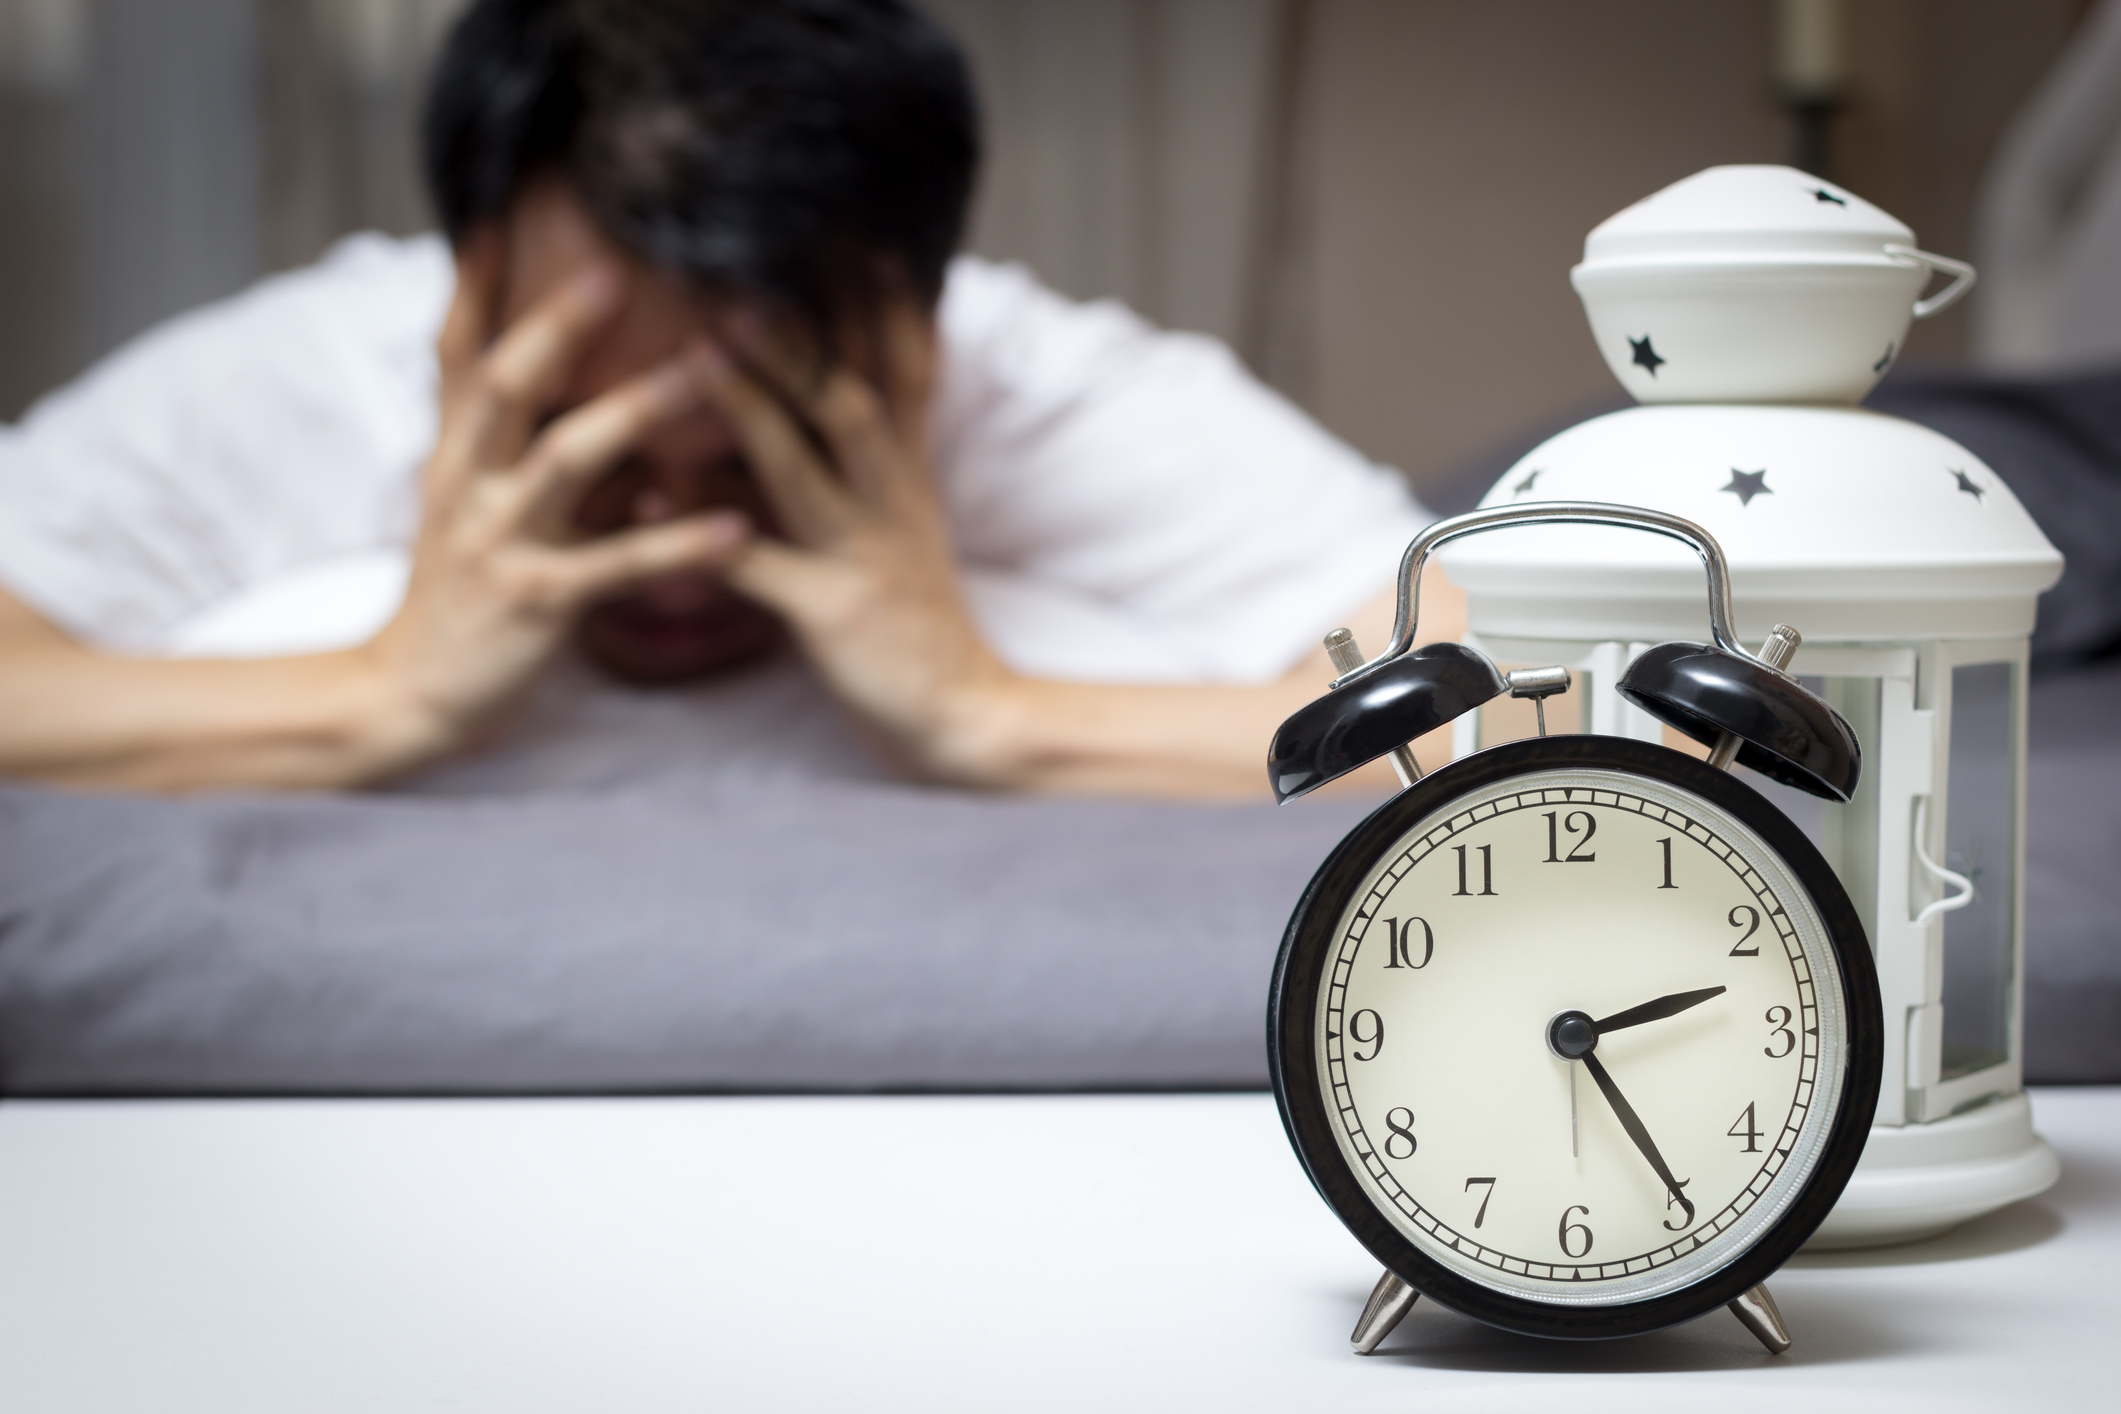 Nespavosť: Aké má príčiny a ako sa dá pomôcť zbaviť sa insomnie?